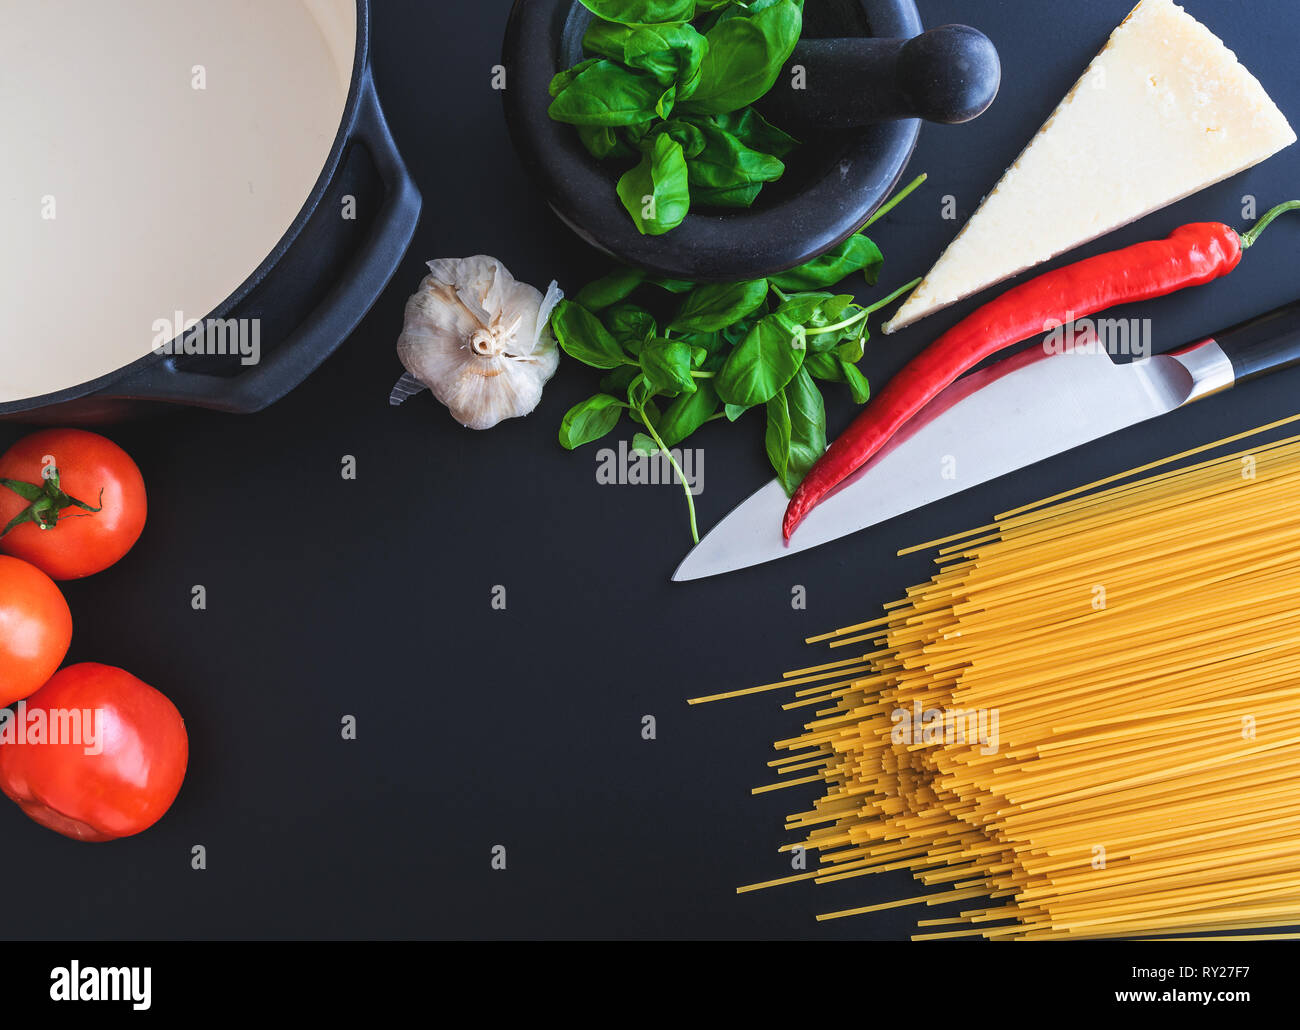 La préparation de pâtes italiennes avec le basilic dans le mortier, les tomates, l'ail, le poivre et le parmesan sur le comptoir de la cuisine sombre Banque D'Images